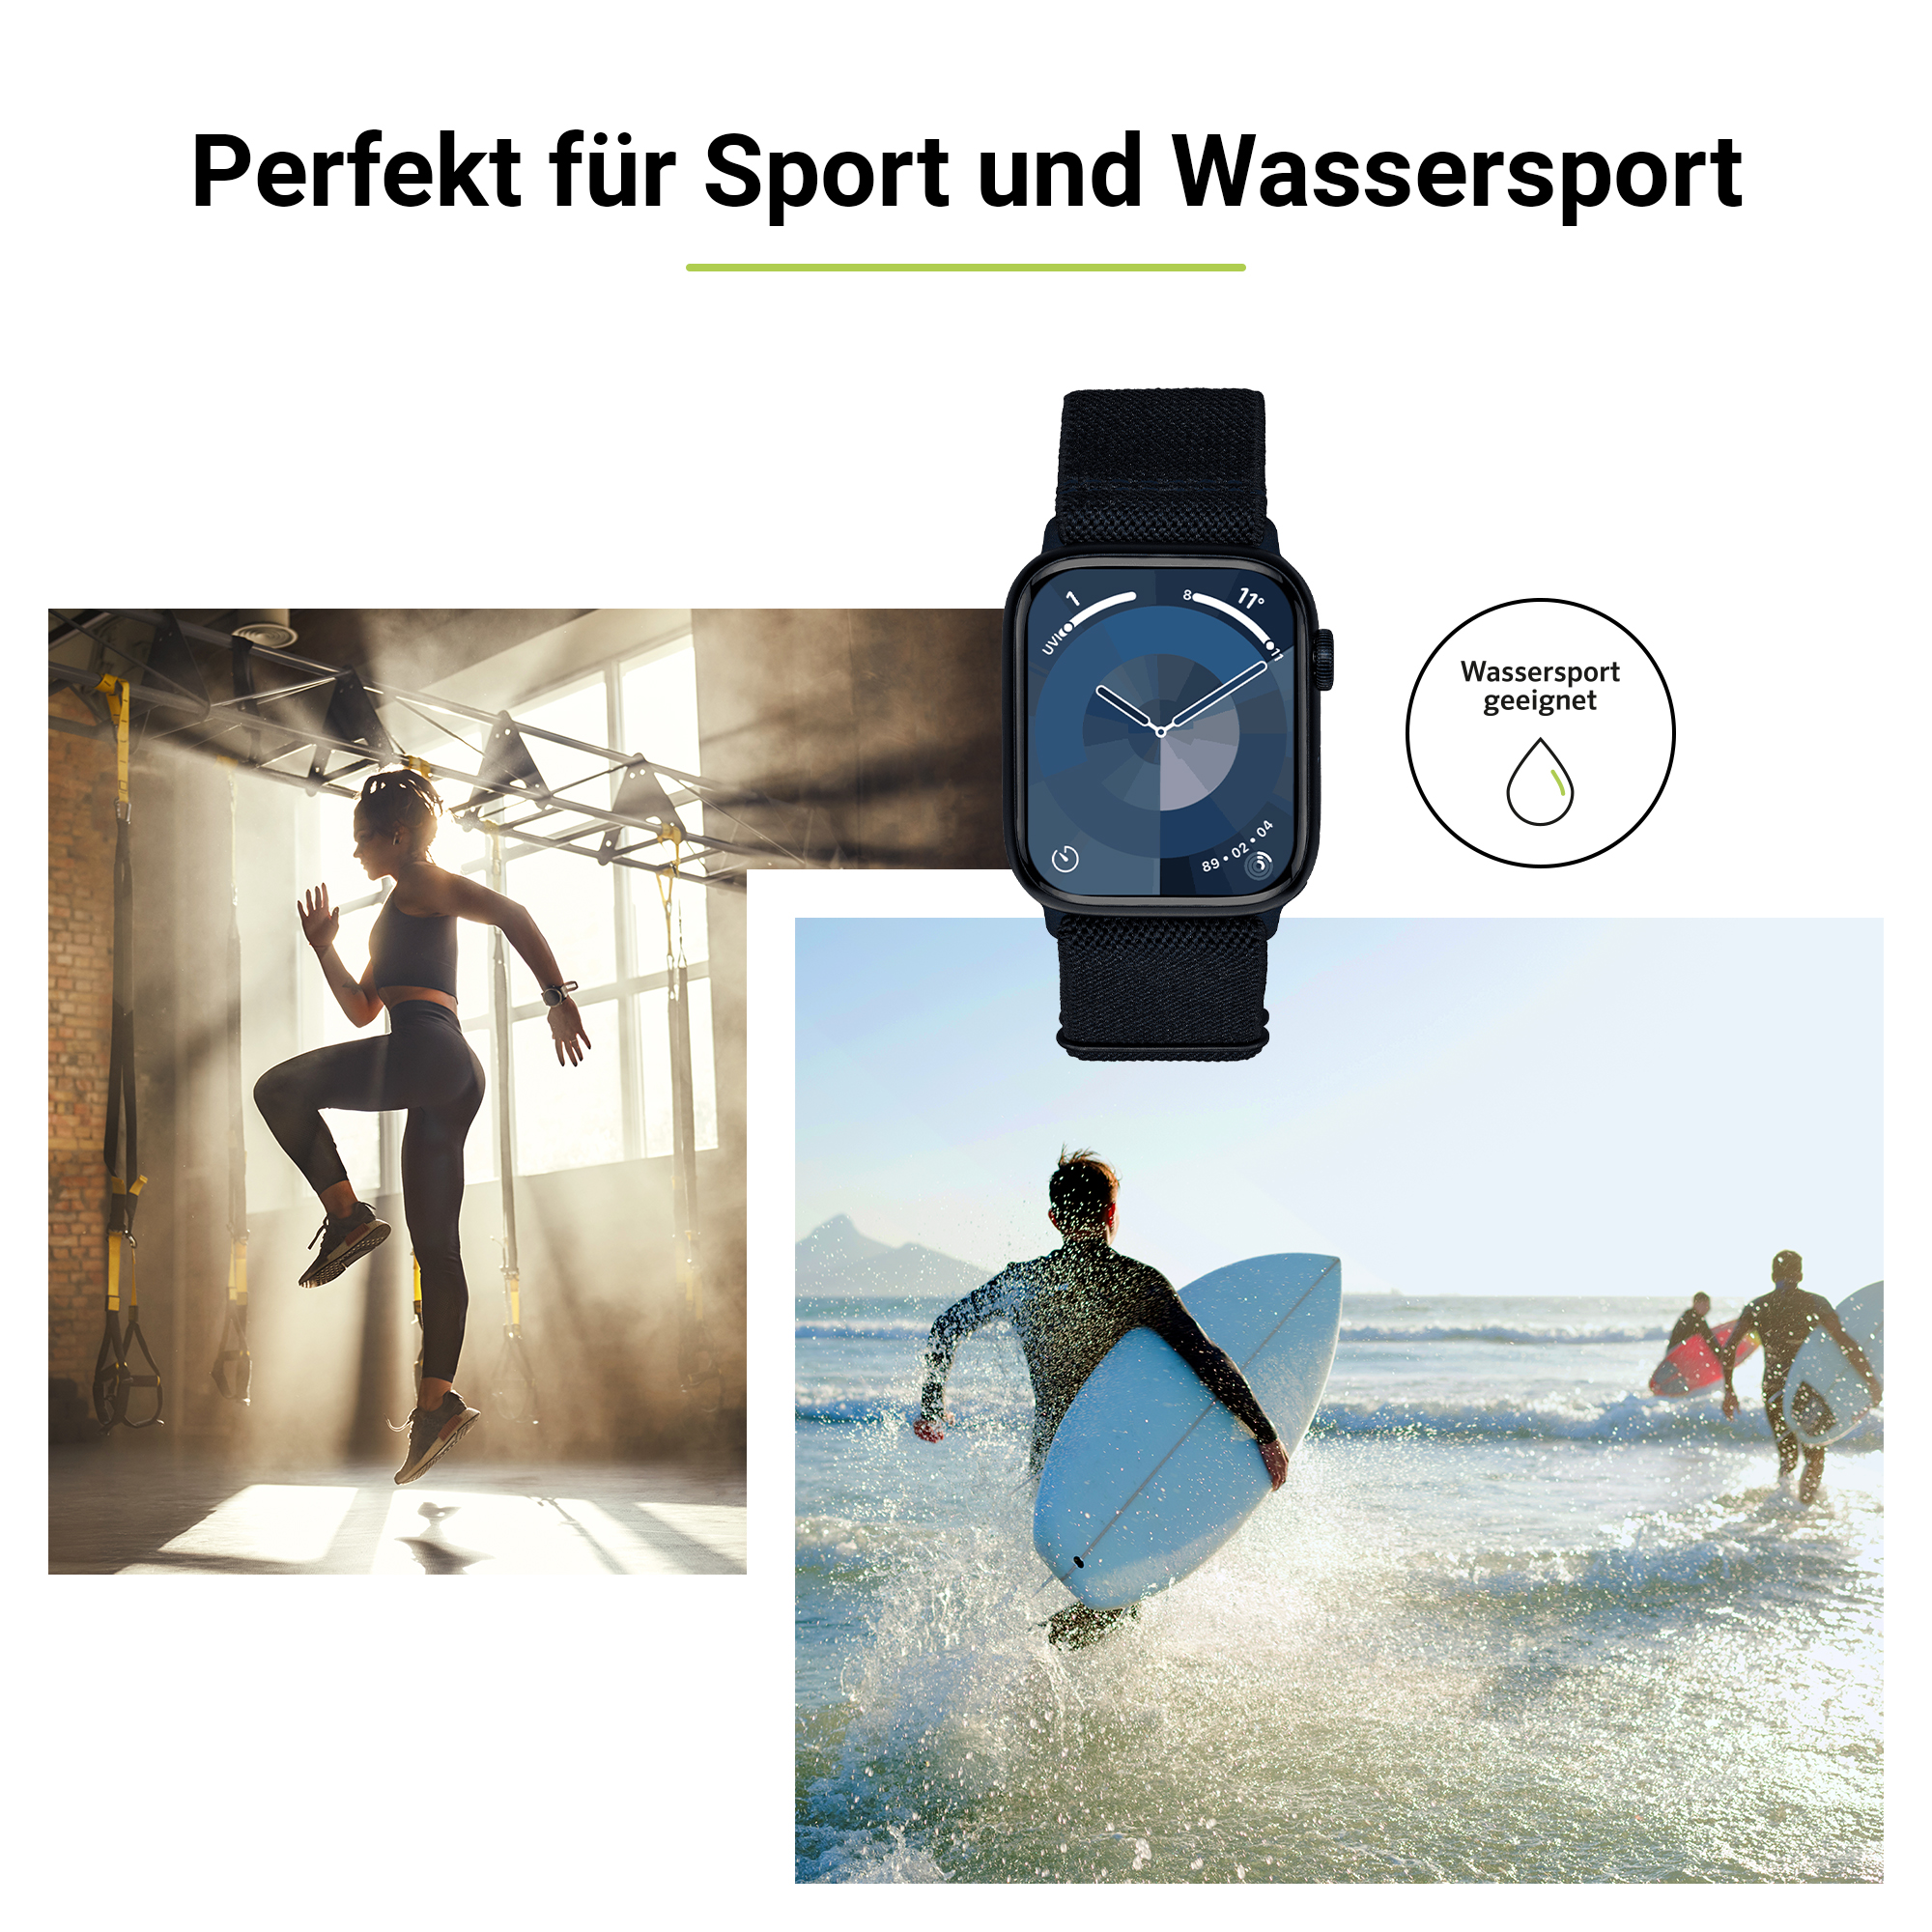 ARTWIZZ WatchBand Flex, Ersatzarmband, (44mm), 9-7 (45mm), 3-1 Ultra SE (42mm), Watch Apple Apple, & (49mm), Blau 6-4